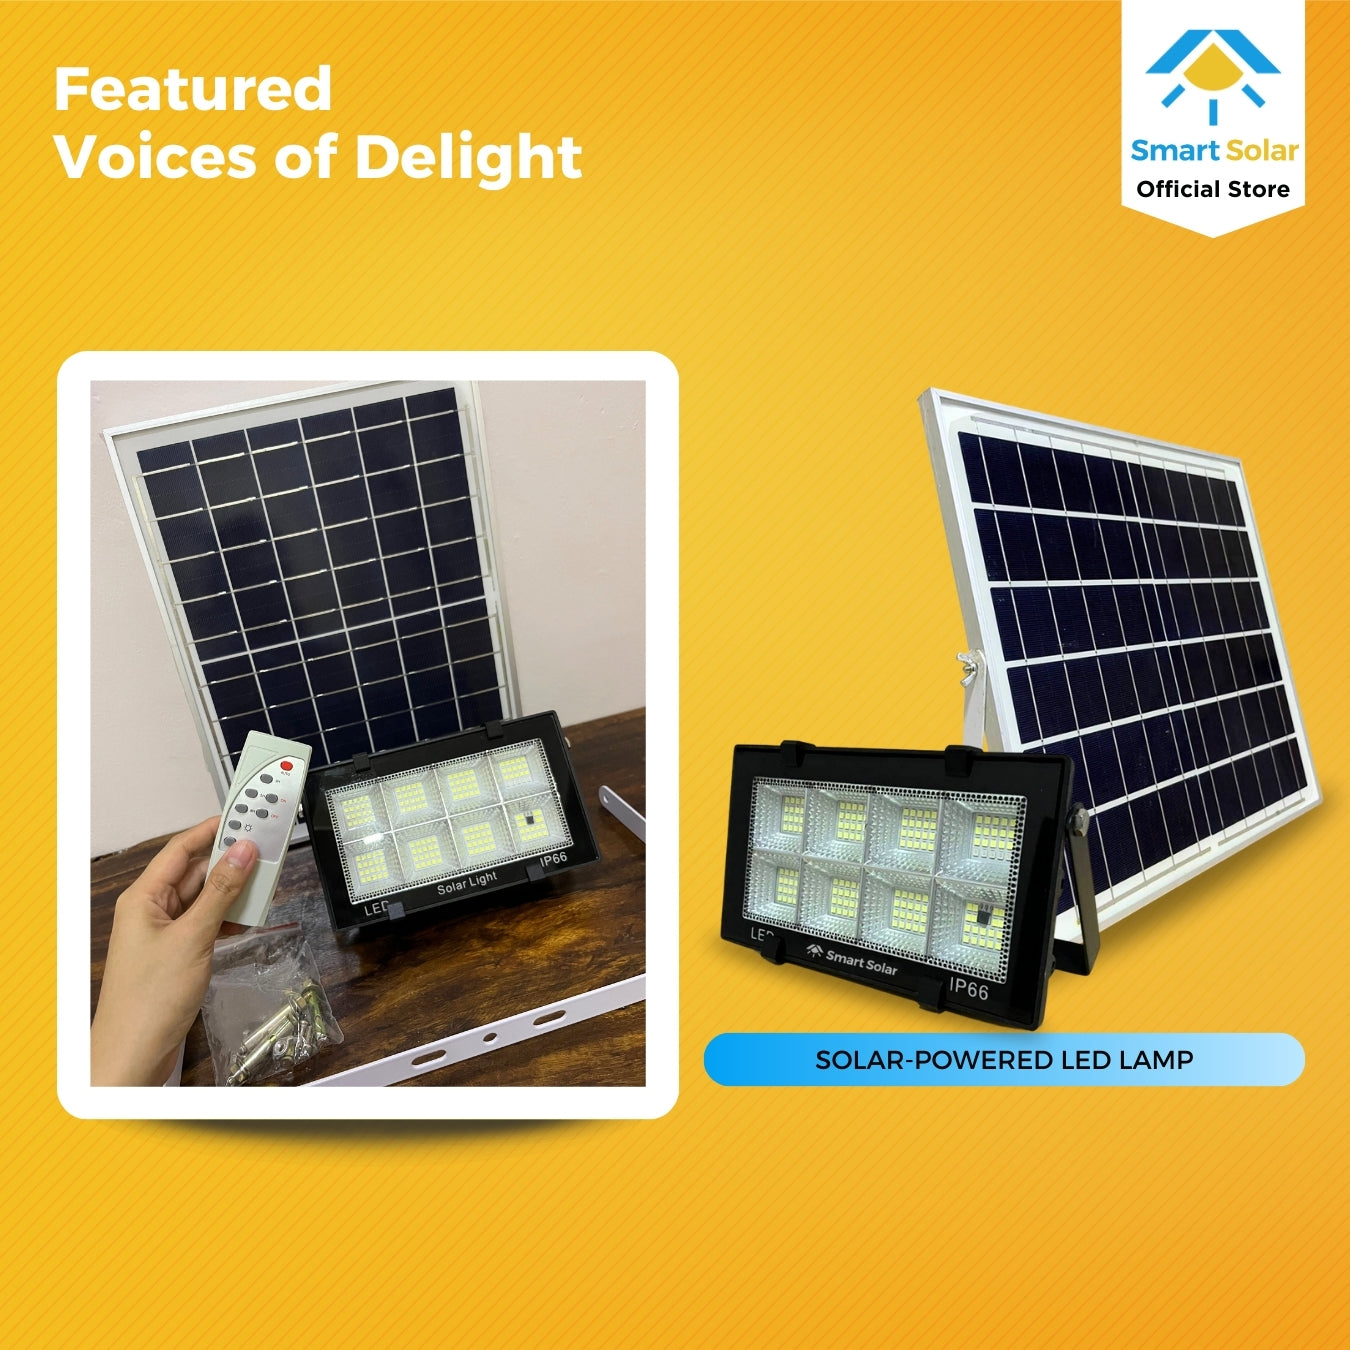 120 watts Smart Solar Waterproof LED Lamp